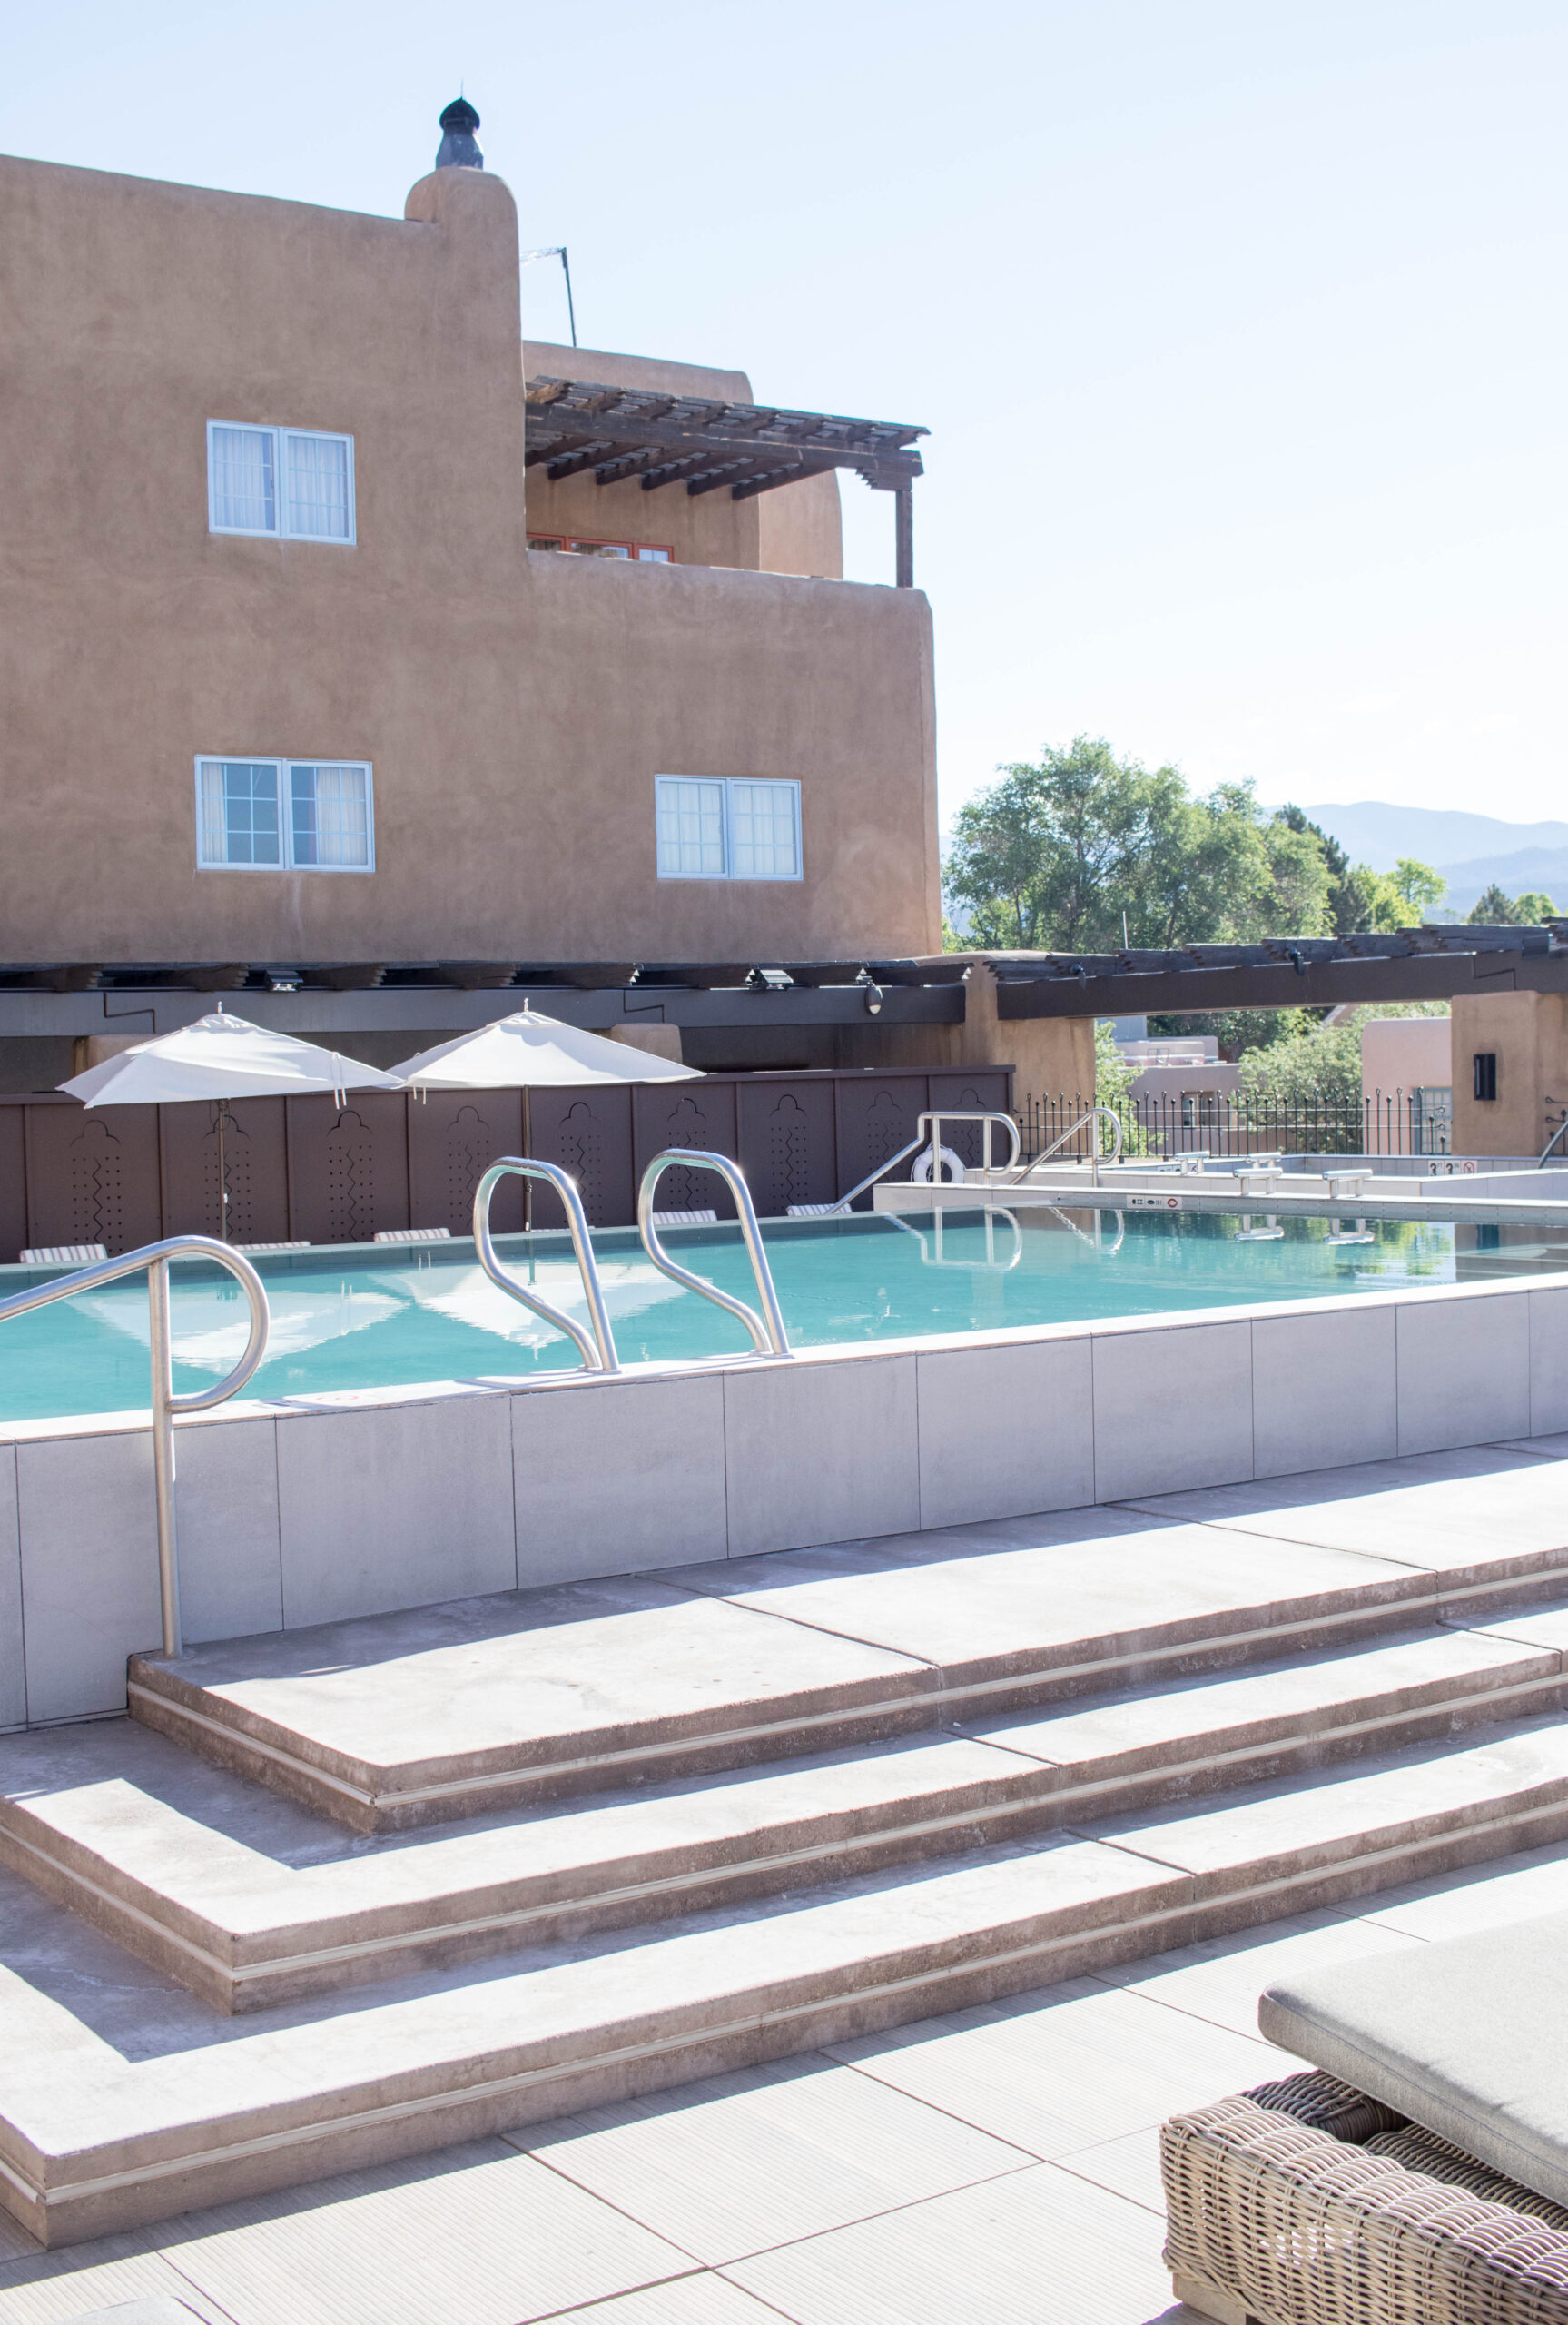 pool at Eldorado hotel and spa Santa Fe #eldoradohotel #santafe #simplysocialnmpartner